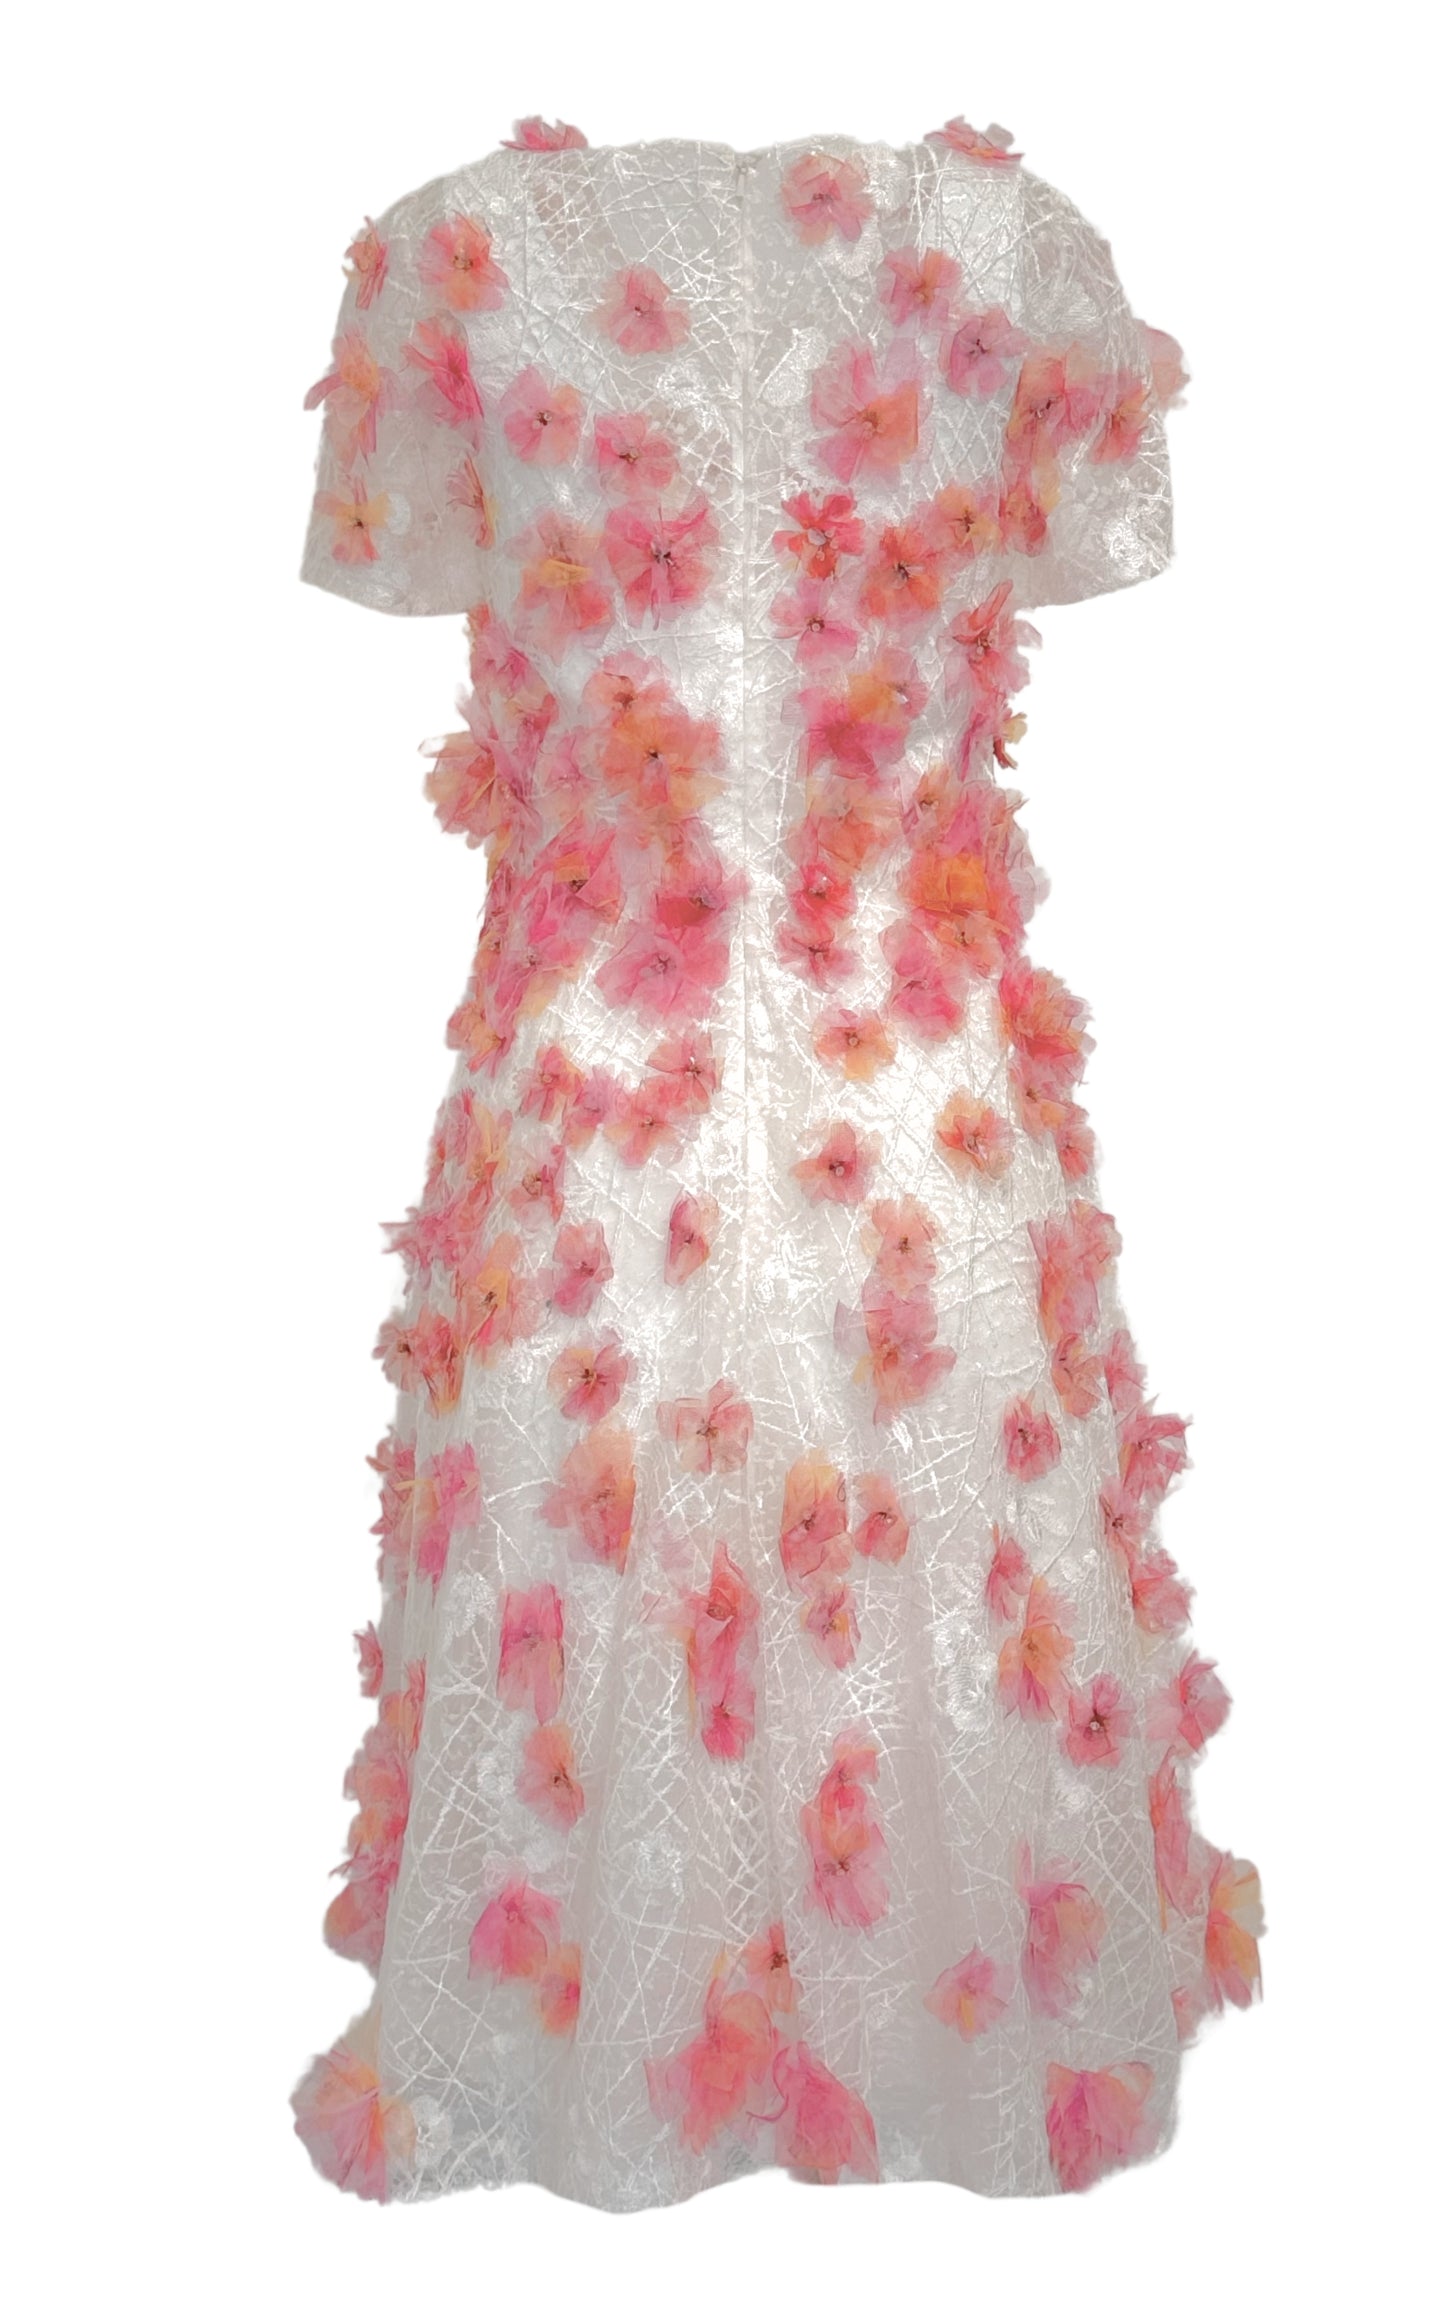 粉色花卉贴花蕾丝中长连衣裙